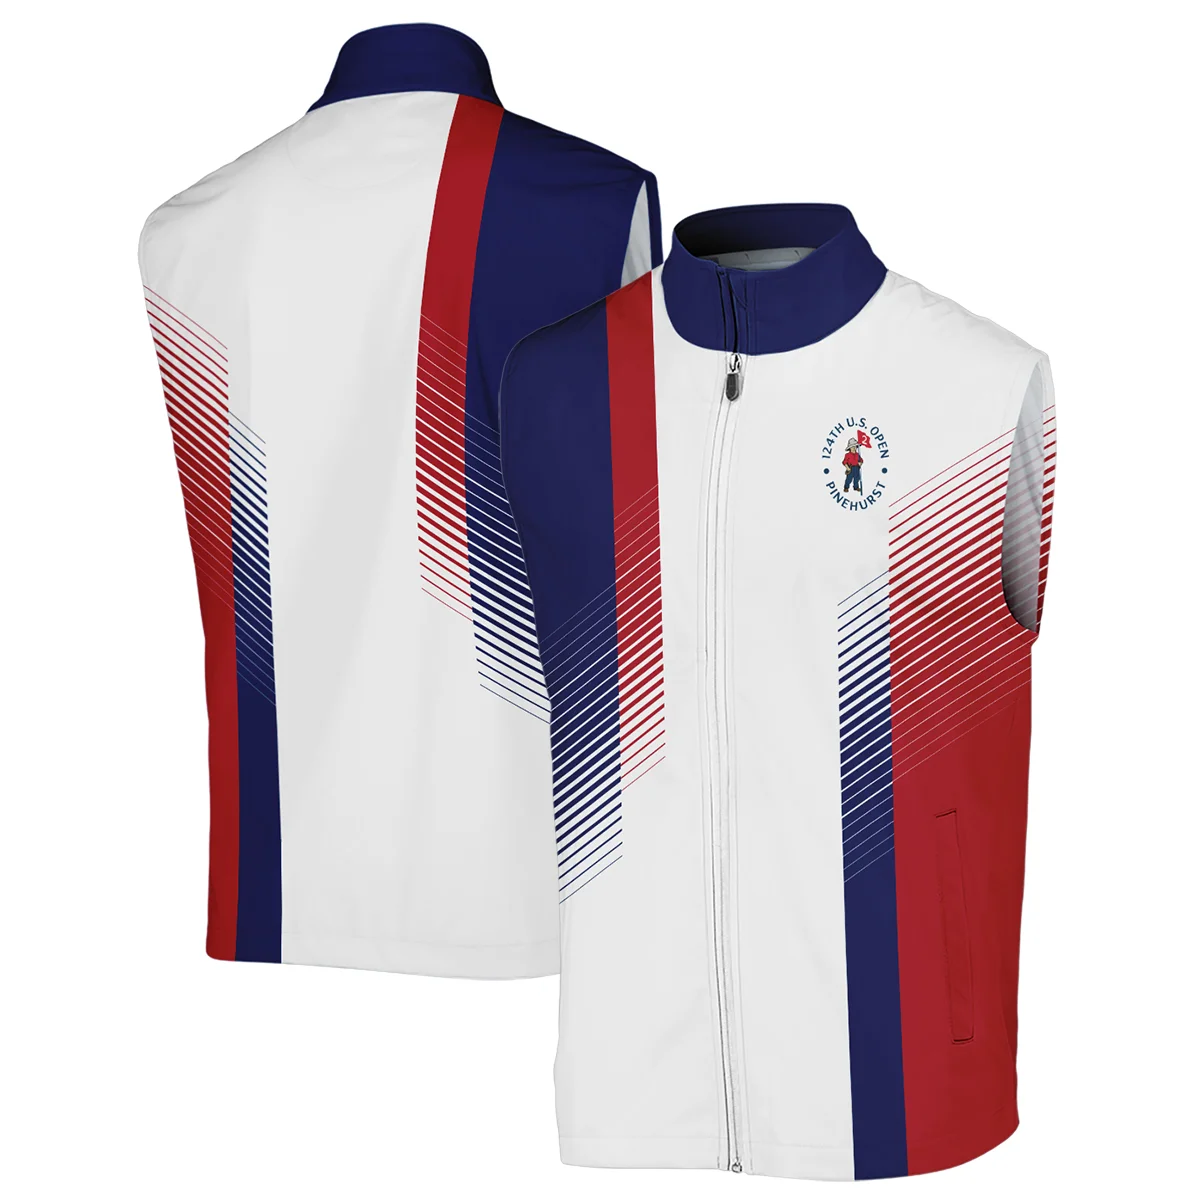 124th U.S. Open Pinehurst Sports Ping Zipper Hoodie Shirt Golf Blue Red All Over Print Zipper Hoodie Shirt